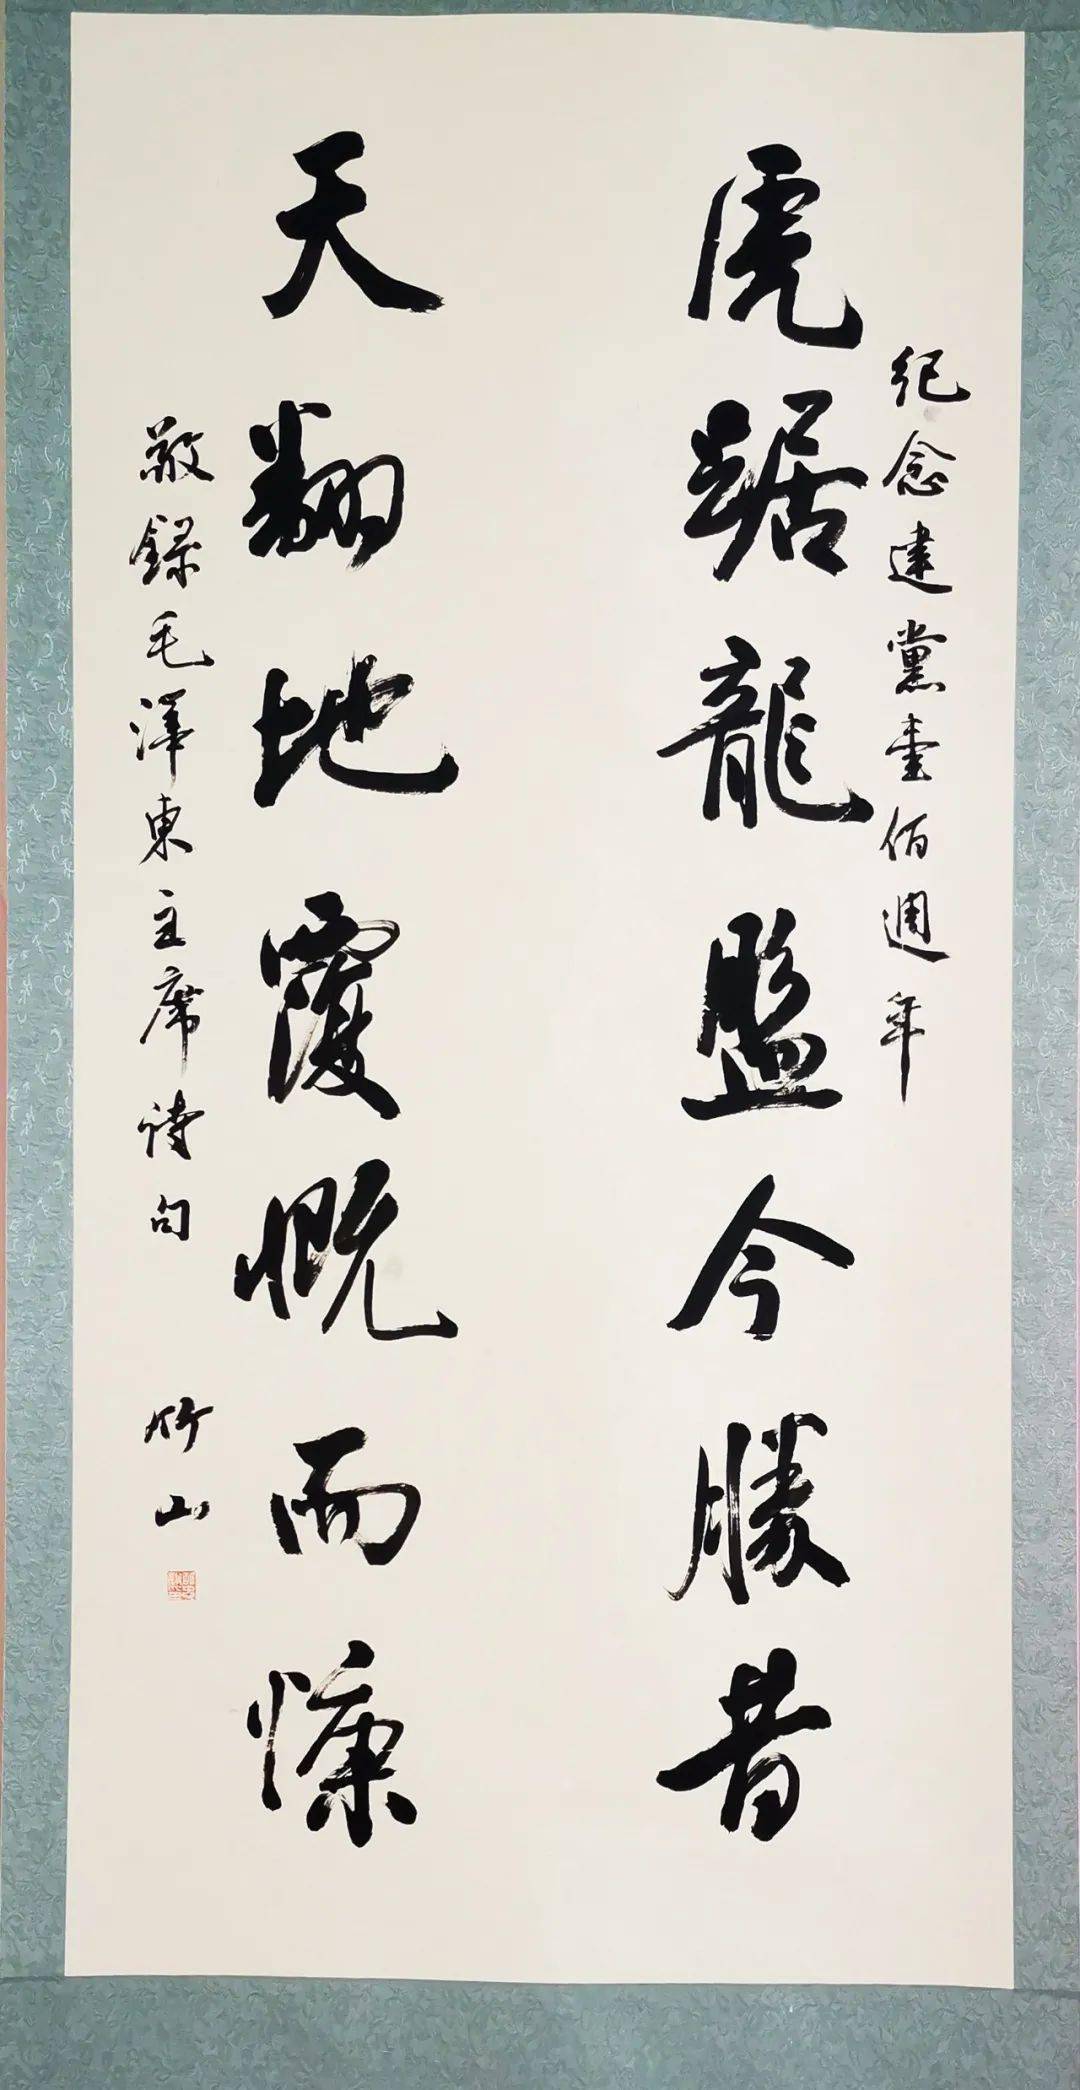 江西省司法厅庆祝建党100周年永远跟党走书画摄影展开展